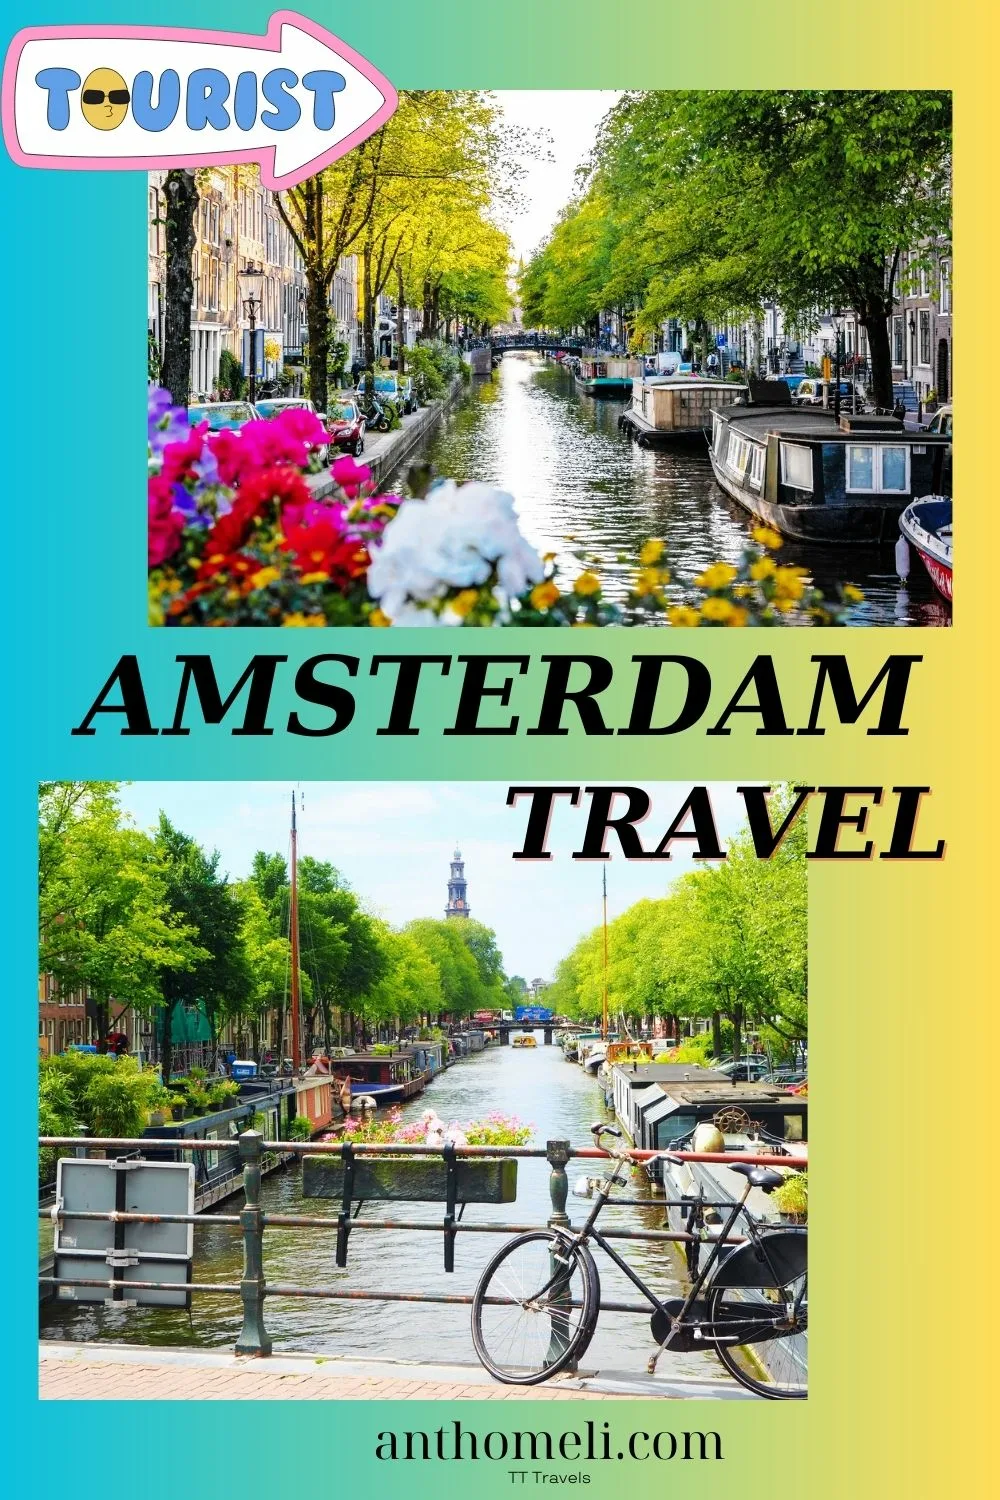 Που να πάτε και τι να δείτε στο Άμστερνταμ. Αξιοθέατα, πόλη, μουσεία, κανάλια, ποδήλατα, κόκκινα φανάρια, coffee shops, τουλίπες.